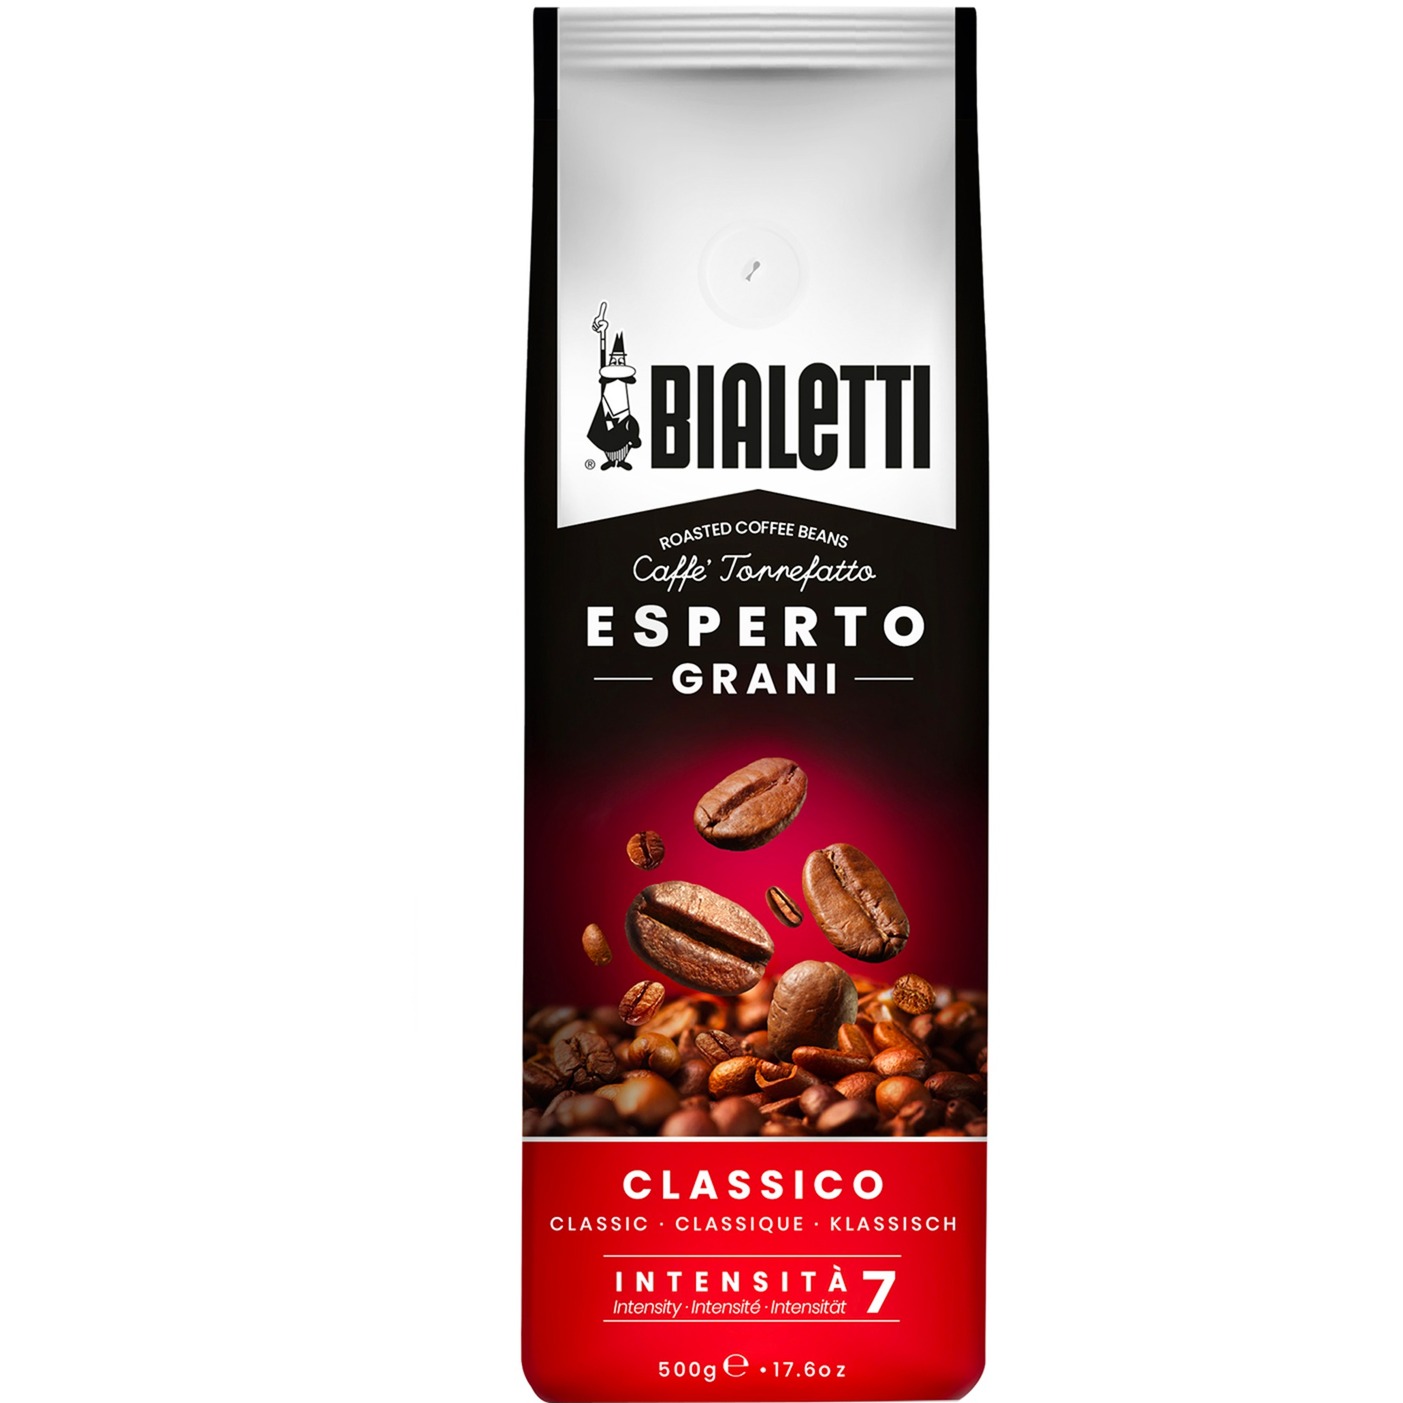 Esperto Grani Classico, Kaffee von Bialetti